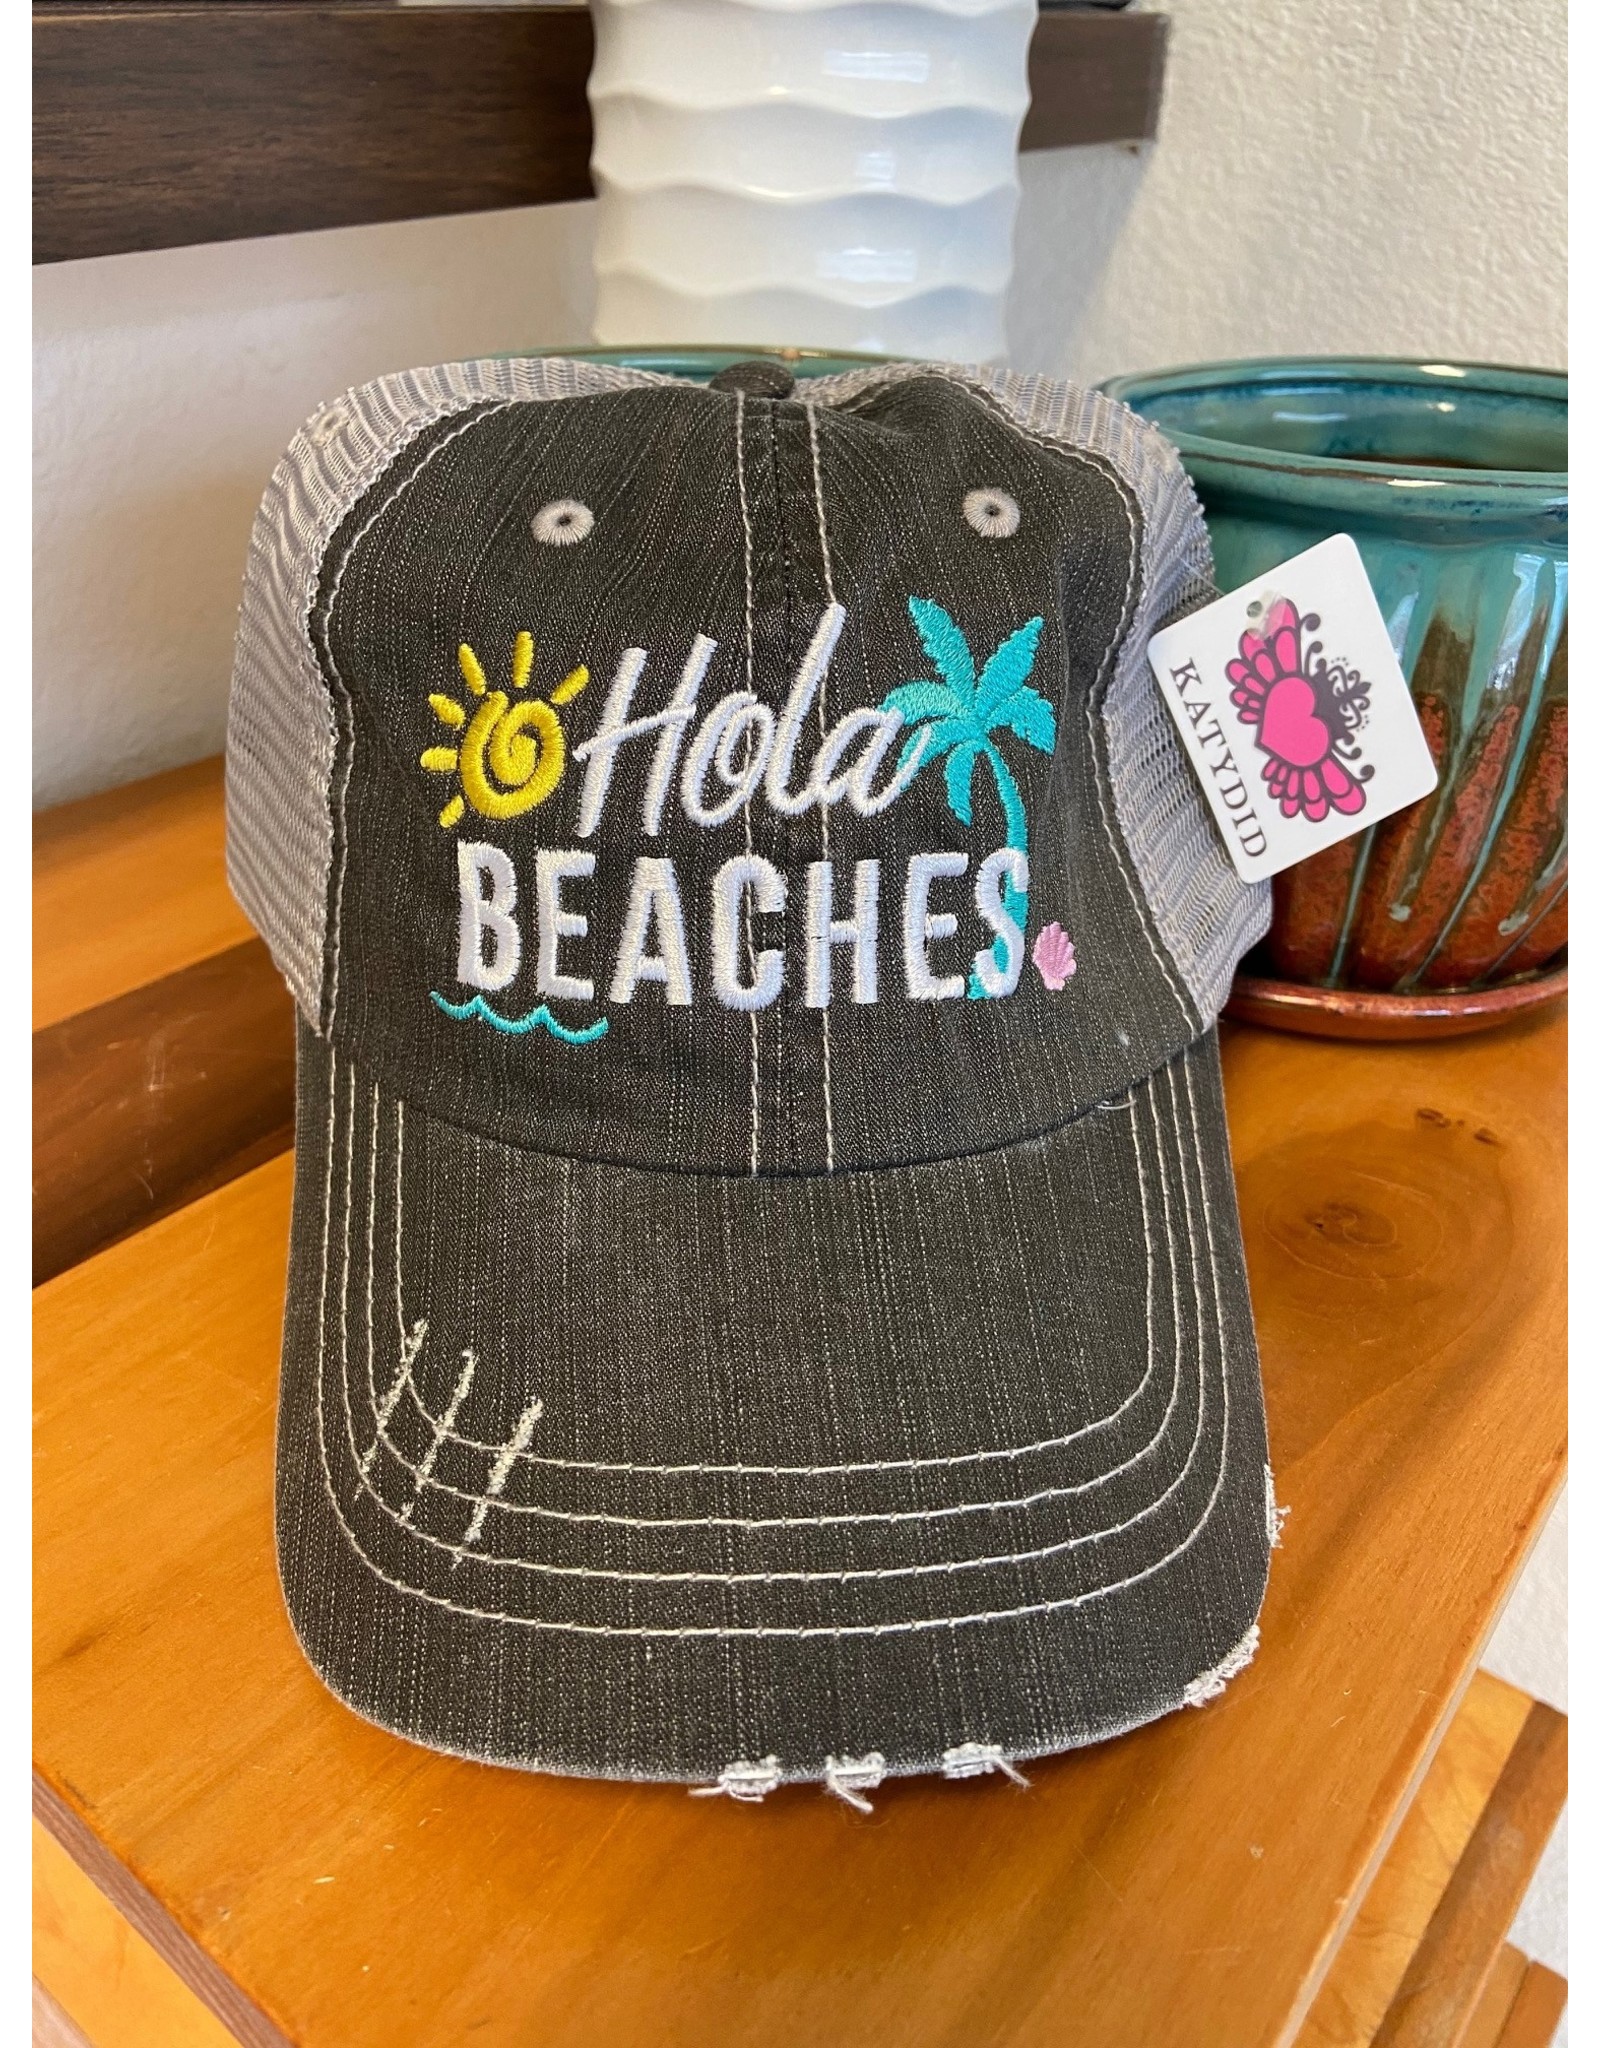 Katydid Beach Bum Trucker Hats